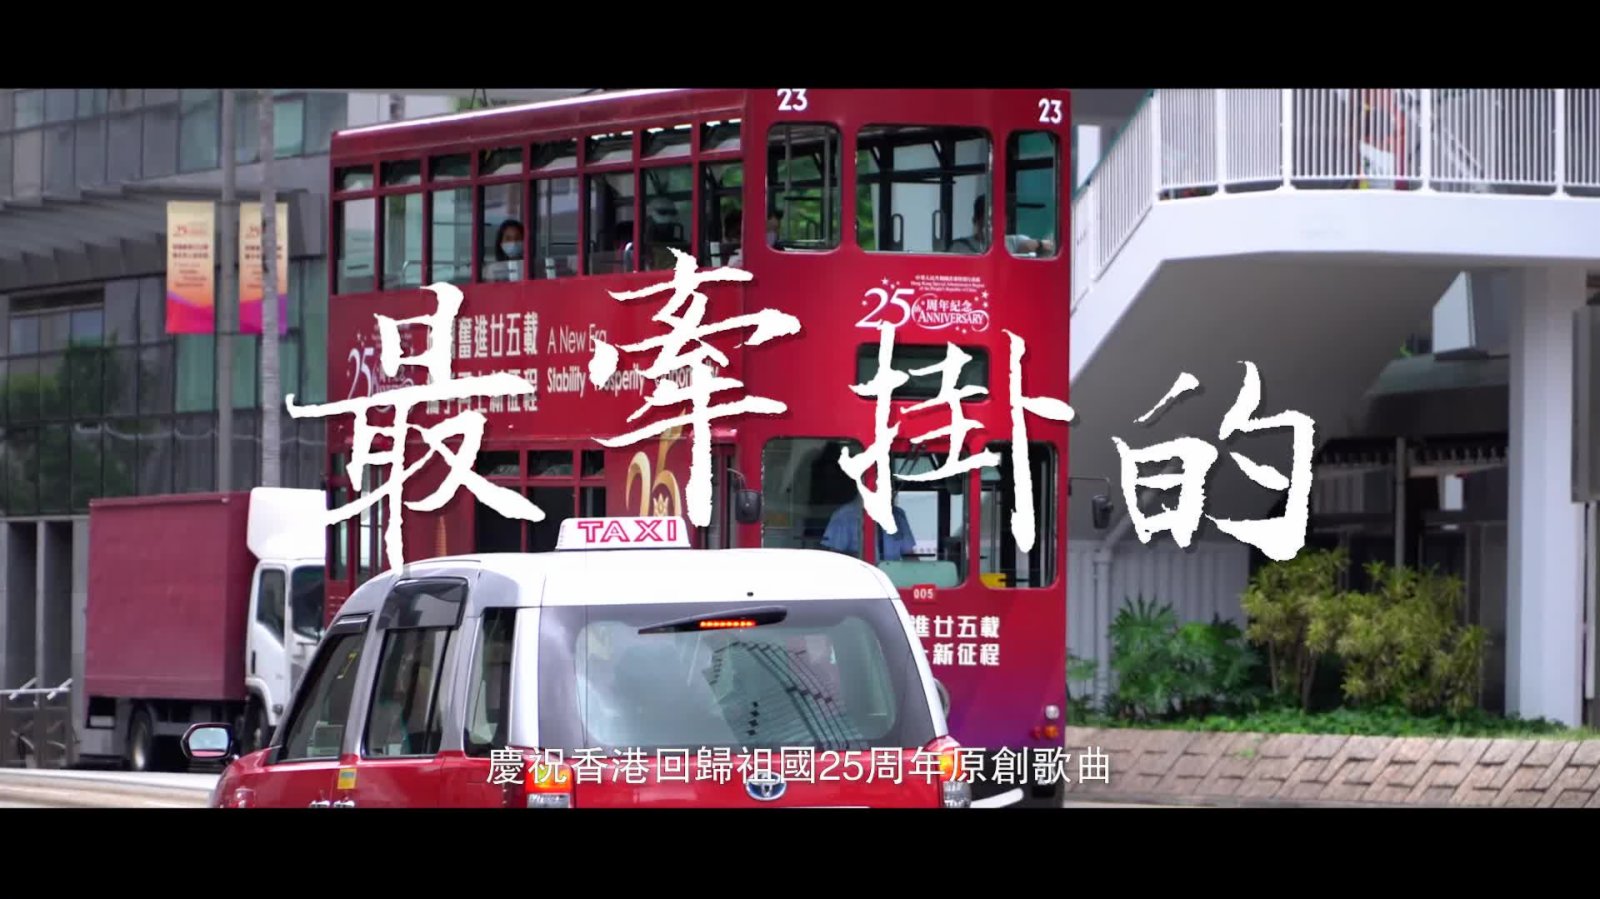 大公文匯推出慶祝香港回歸25周年原創歌曲《最牽掛的》　青春見證人炎明熹演繹